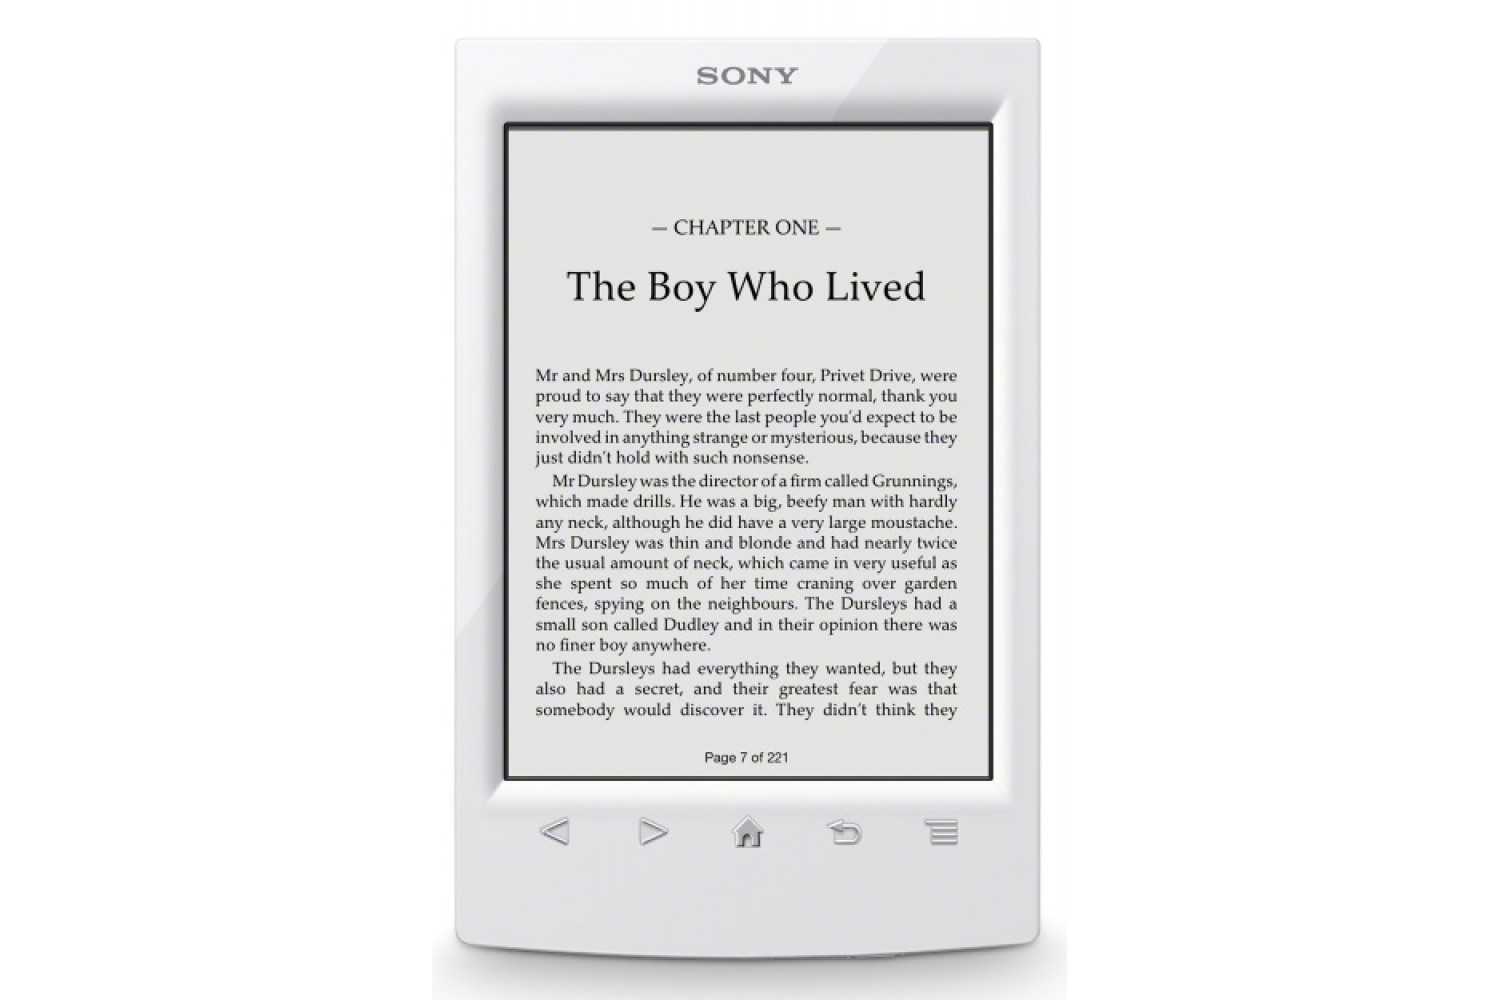 Sony prs-t2 (красный) - купить , скидки, цена, отзывы, обзор, характеристики - электронные книги